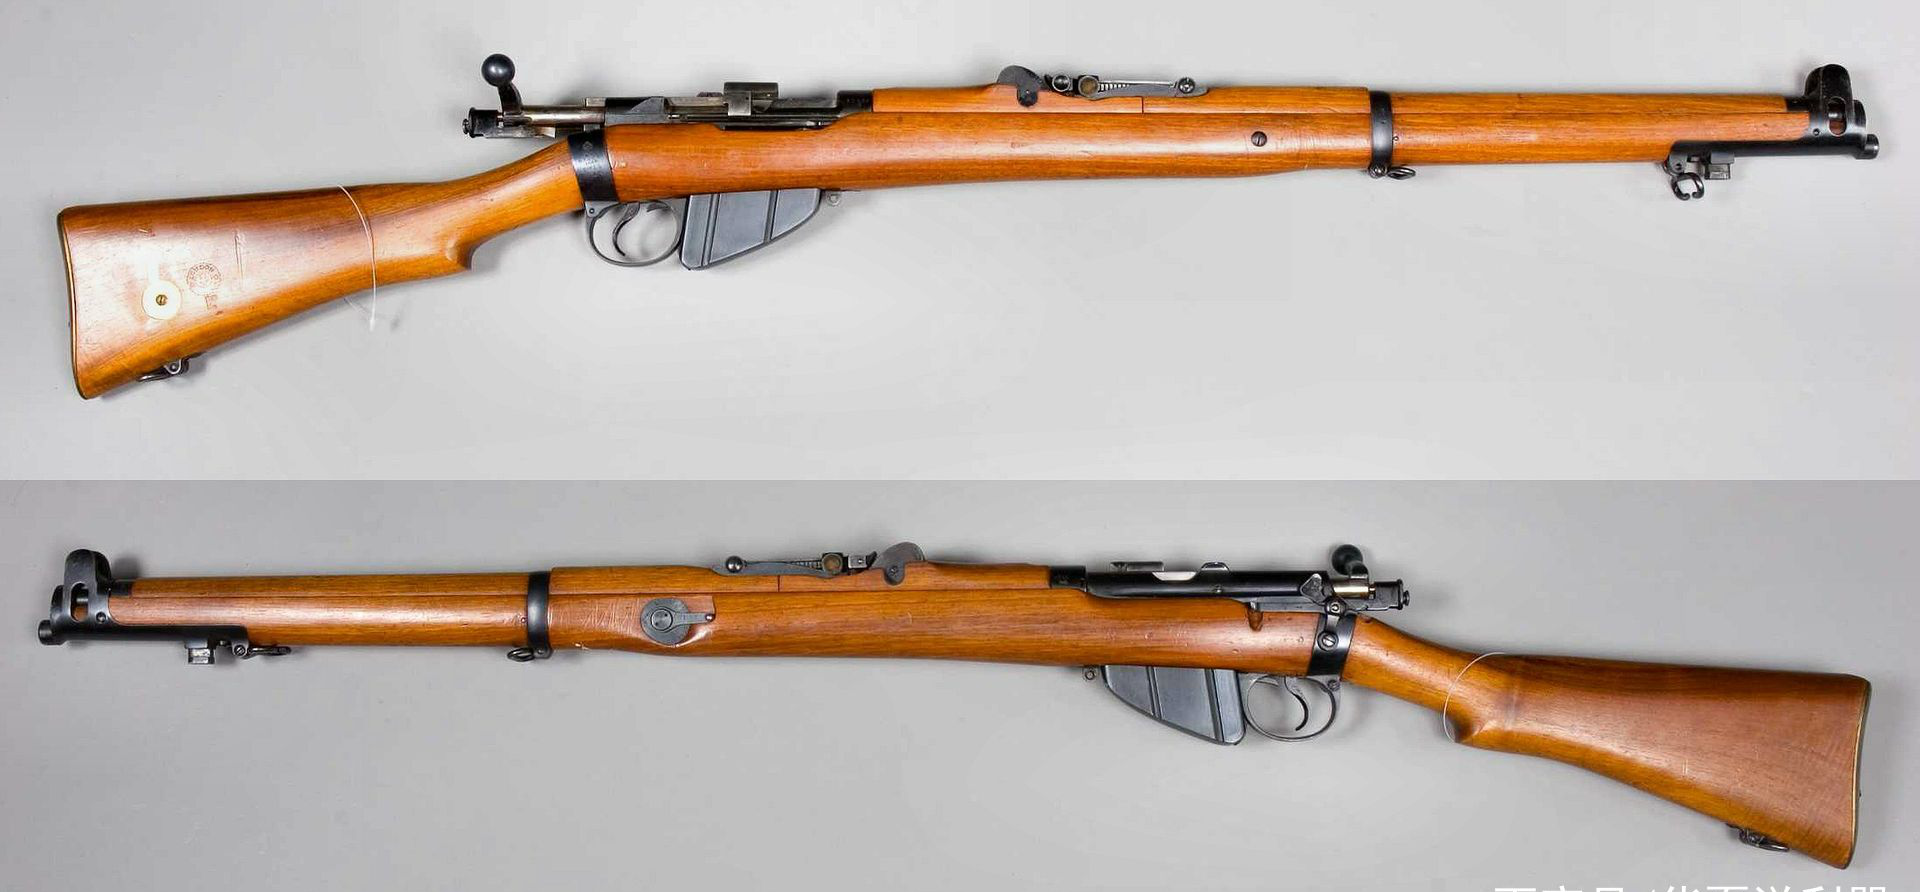 李-恩菲尔德no.1型栓动步枪(一战时期英军装备)